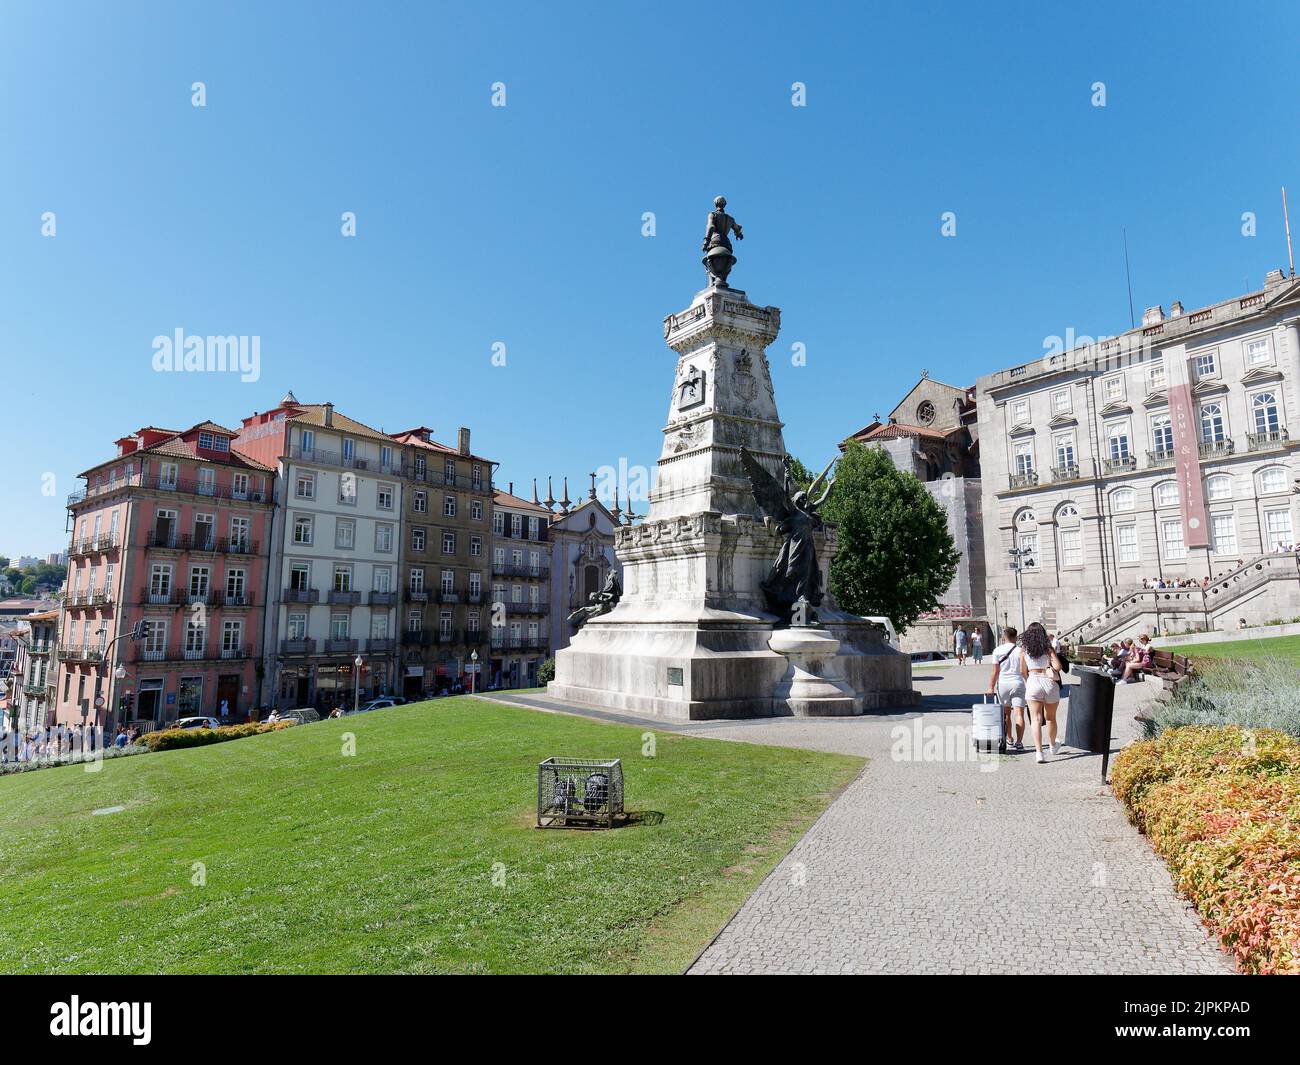 Monumento Infante Dom Henrique e Bolsa Palace a destra una vecchia borsa valori. Porto, Portogallo. Foto Stock